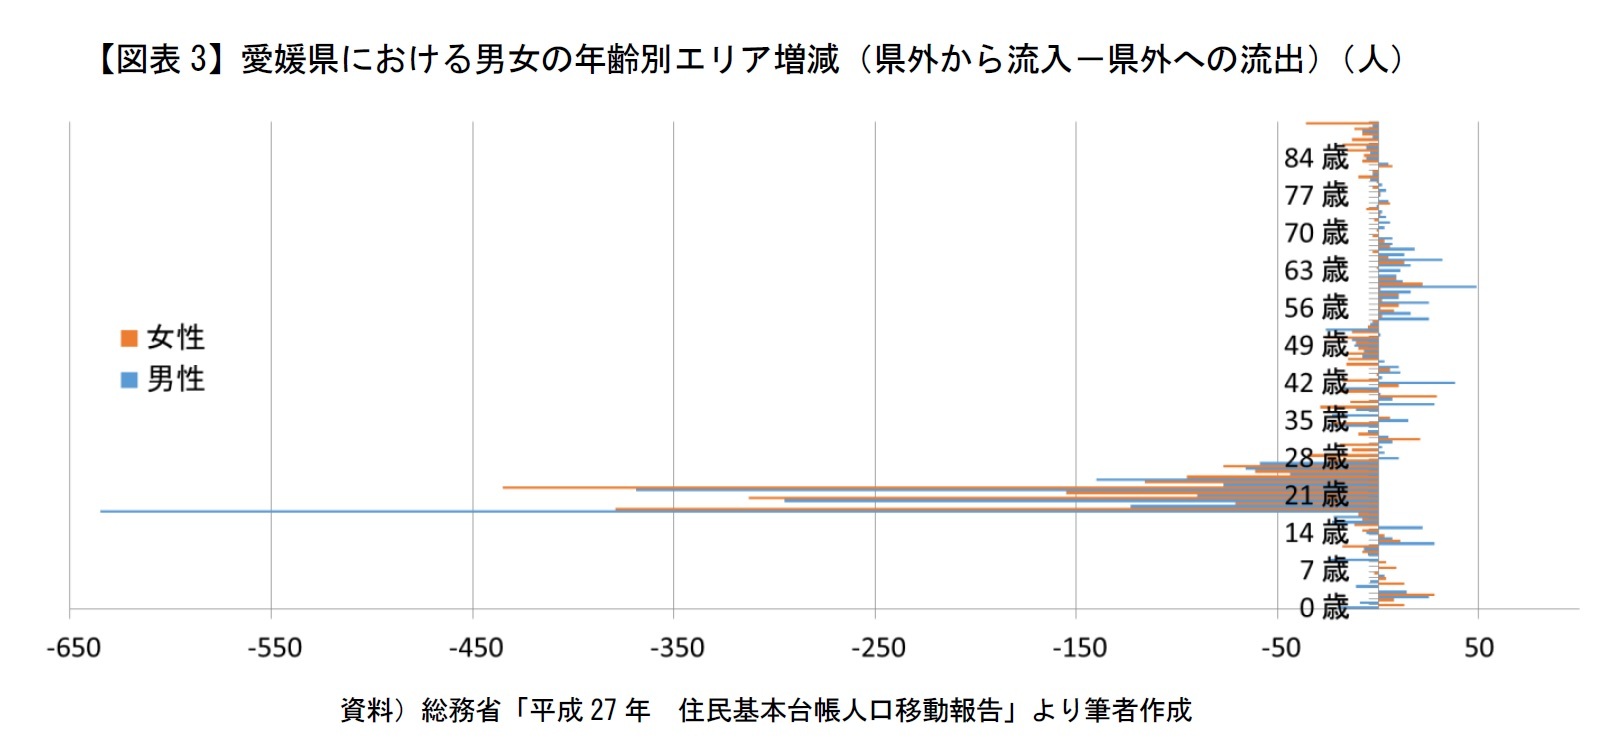 【図表3】愛媛県における男女の年齢別エリア増減（県外から流入－県外への流出）（人）